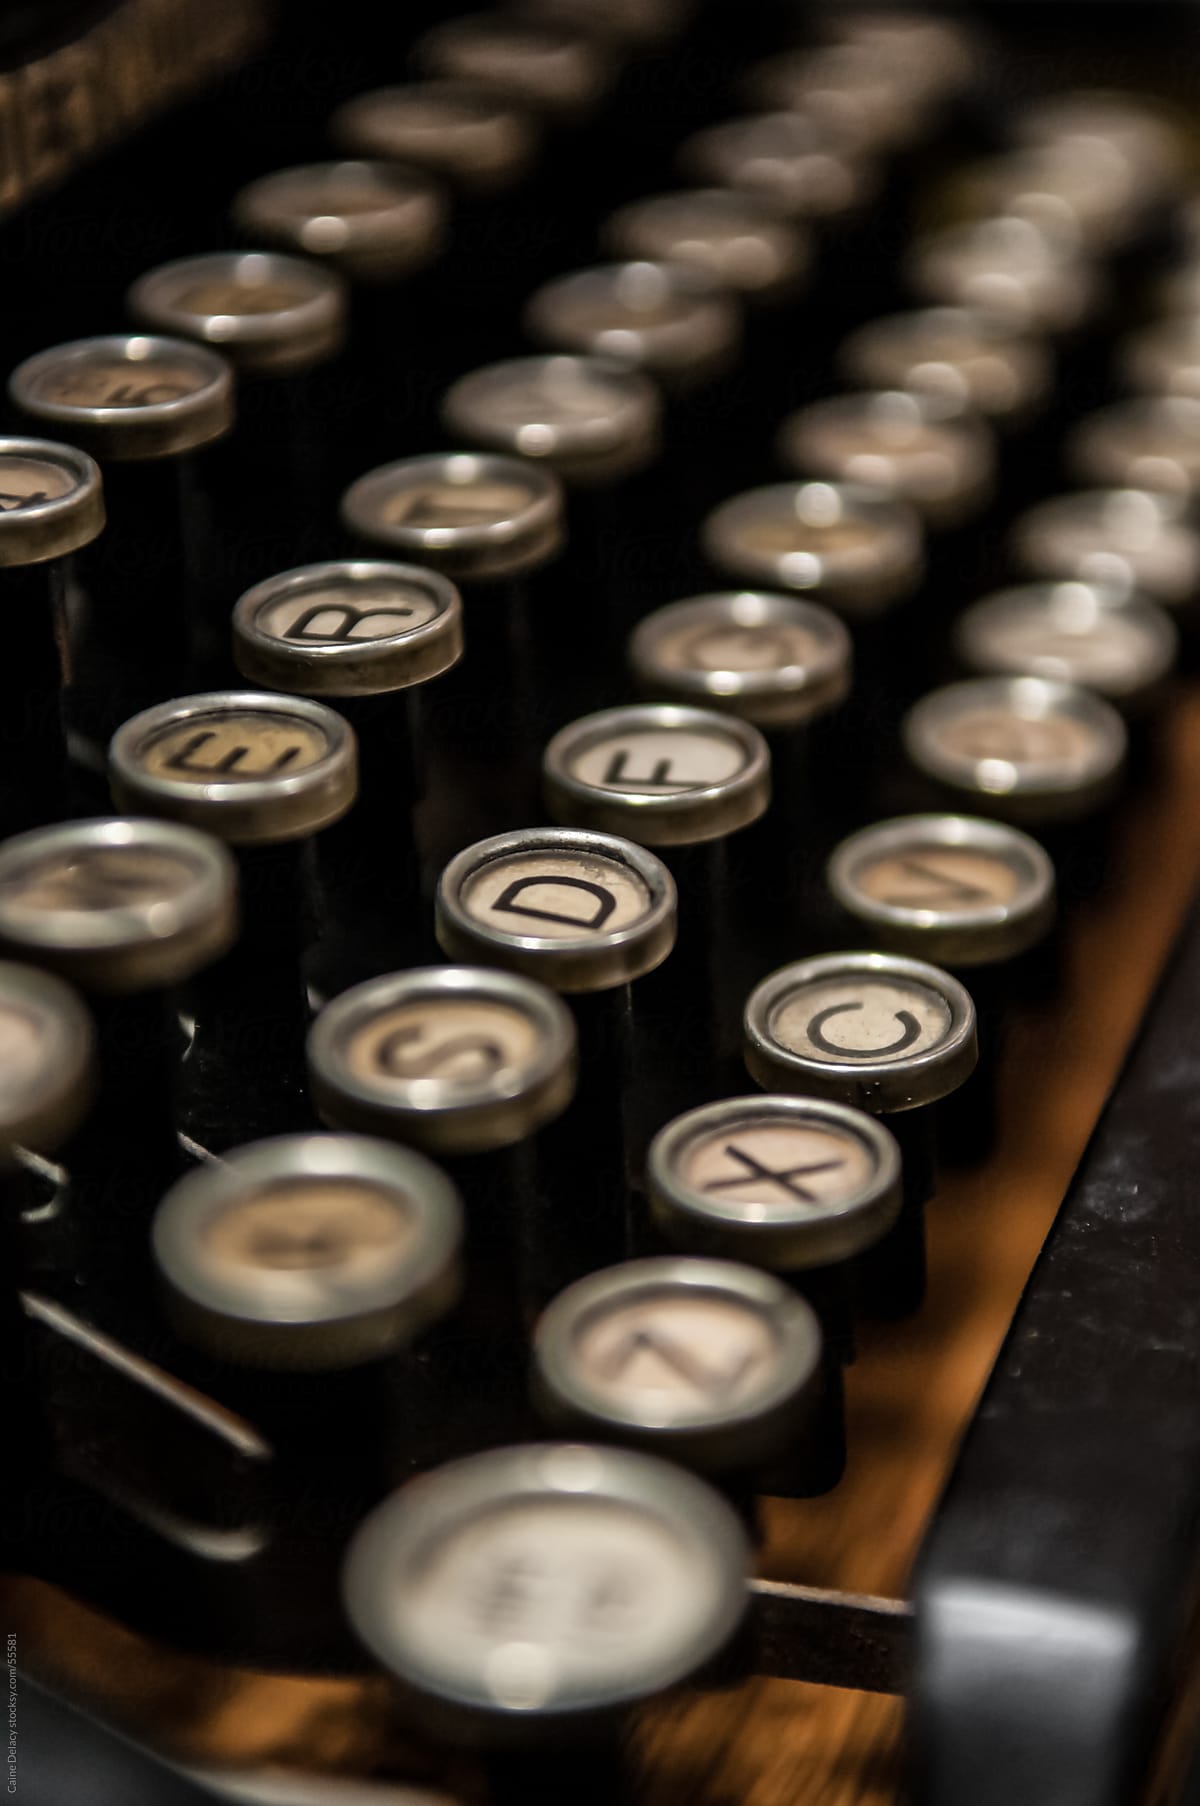 Antique typewriter with round keys